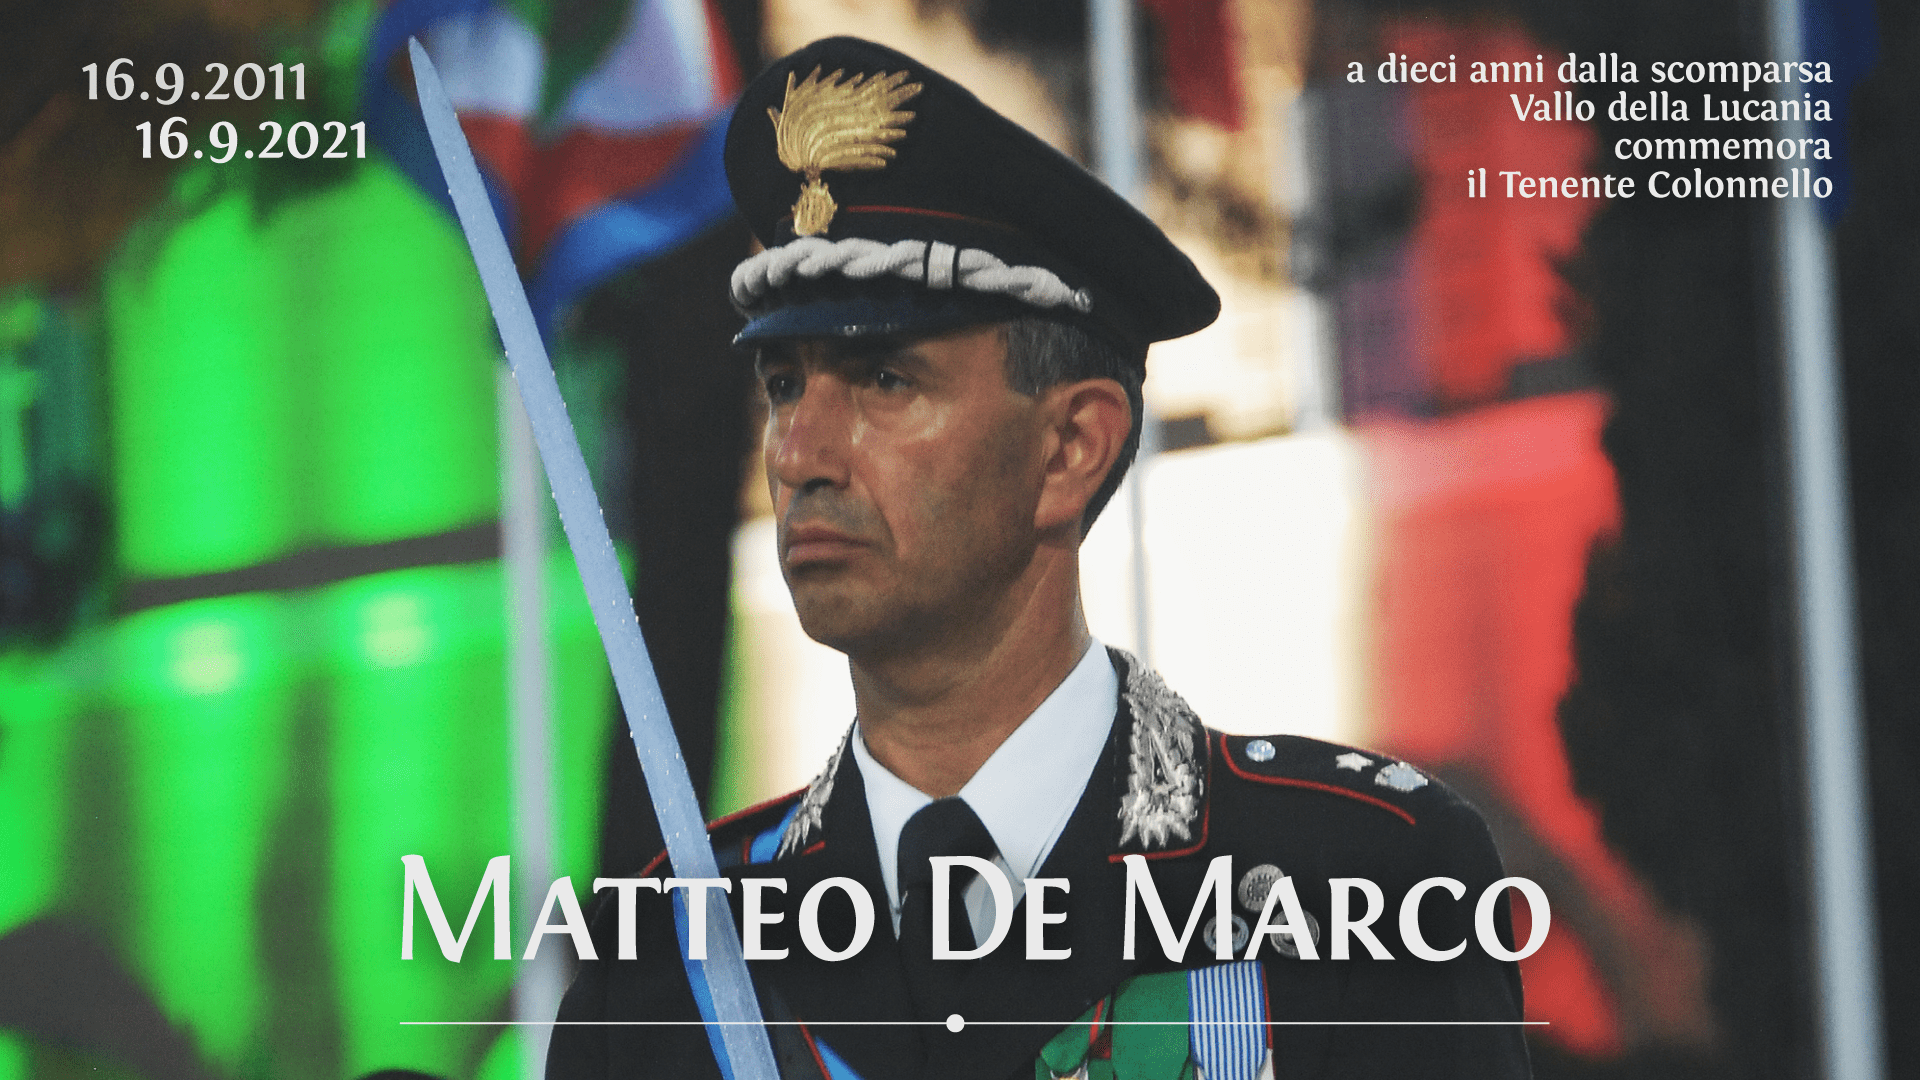 Vallo della Lucania ricorda Matteo De Marco, il colonnello morto in missione in Afghanistan